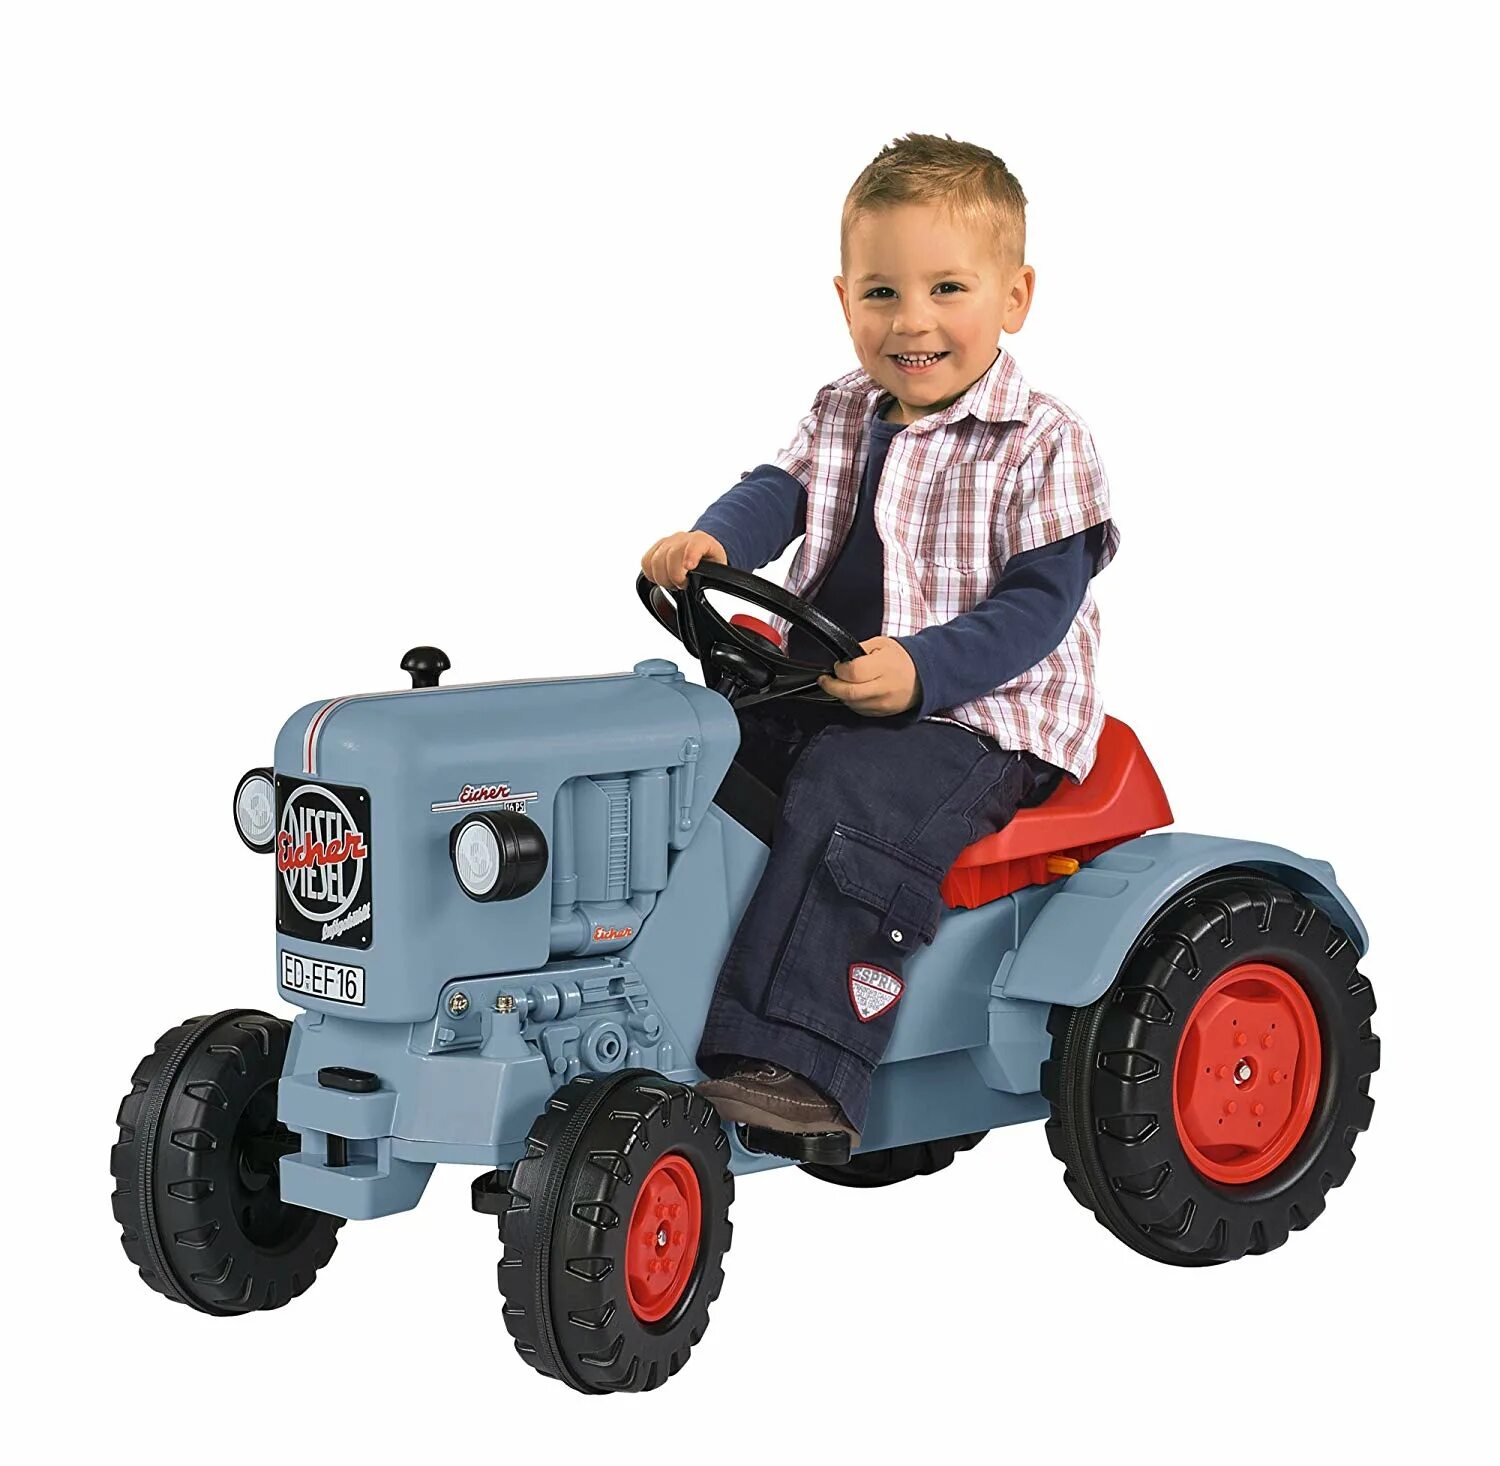 Детские трактора для детей. Трактор педальный артикул 037735. Трактор педальный Ranchero. Детский педальный трактор "Eicher"big. С 3 лет. Серый, черный, красный.. Детский велотрактор с прицепом.